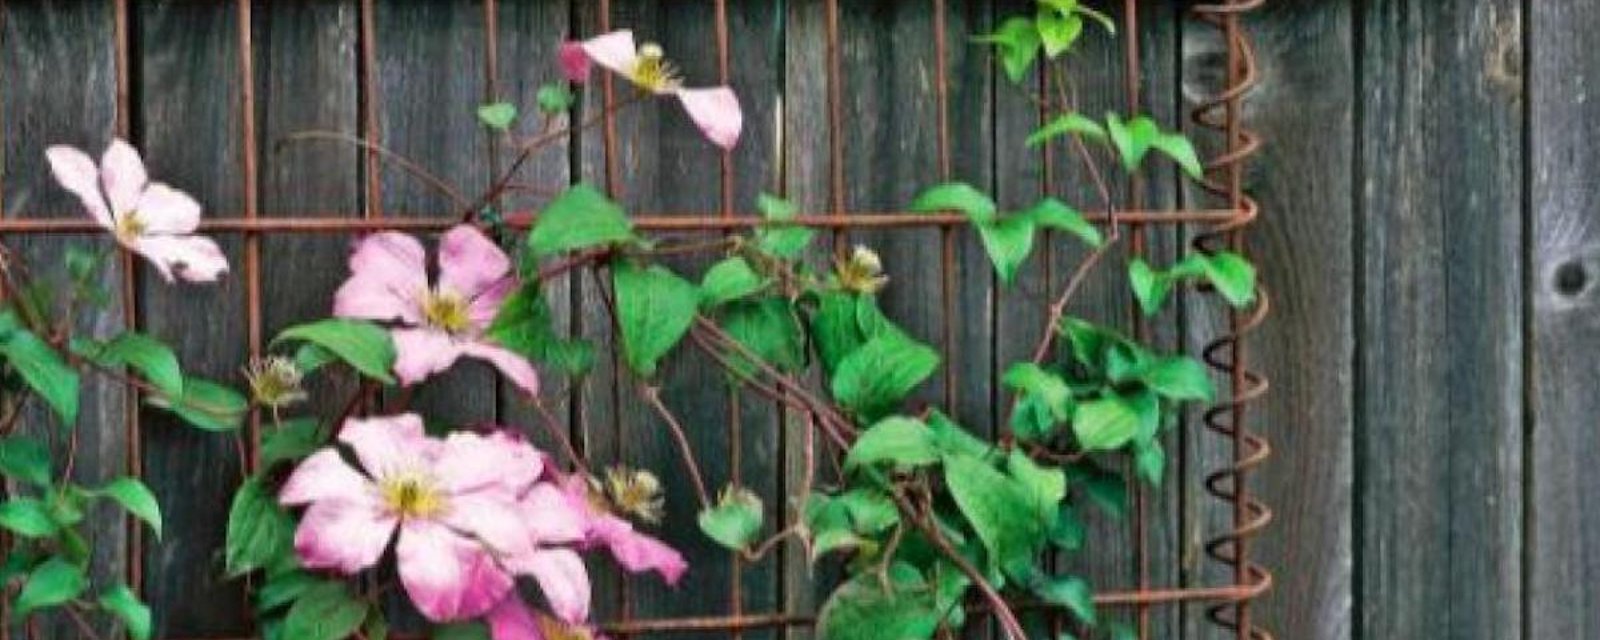 Des idées de supports pour vignes et plantes grimpantes qui peuvent amener votre jardin à un autre niveau!